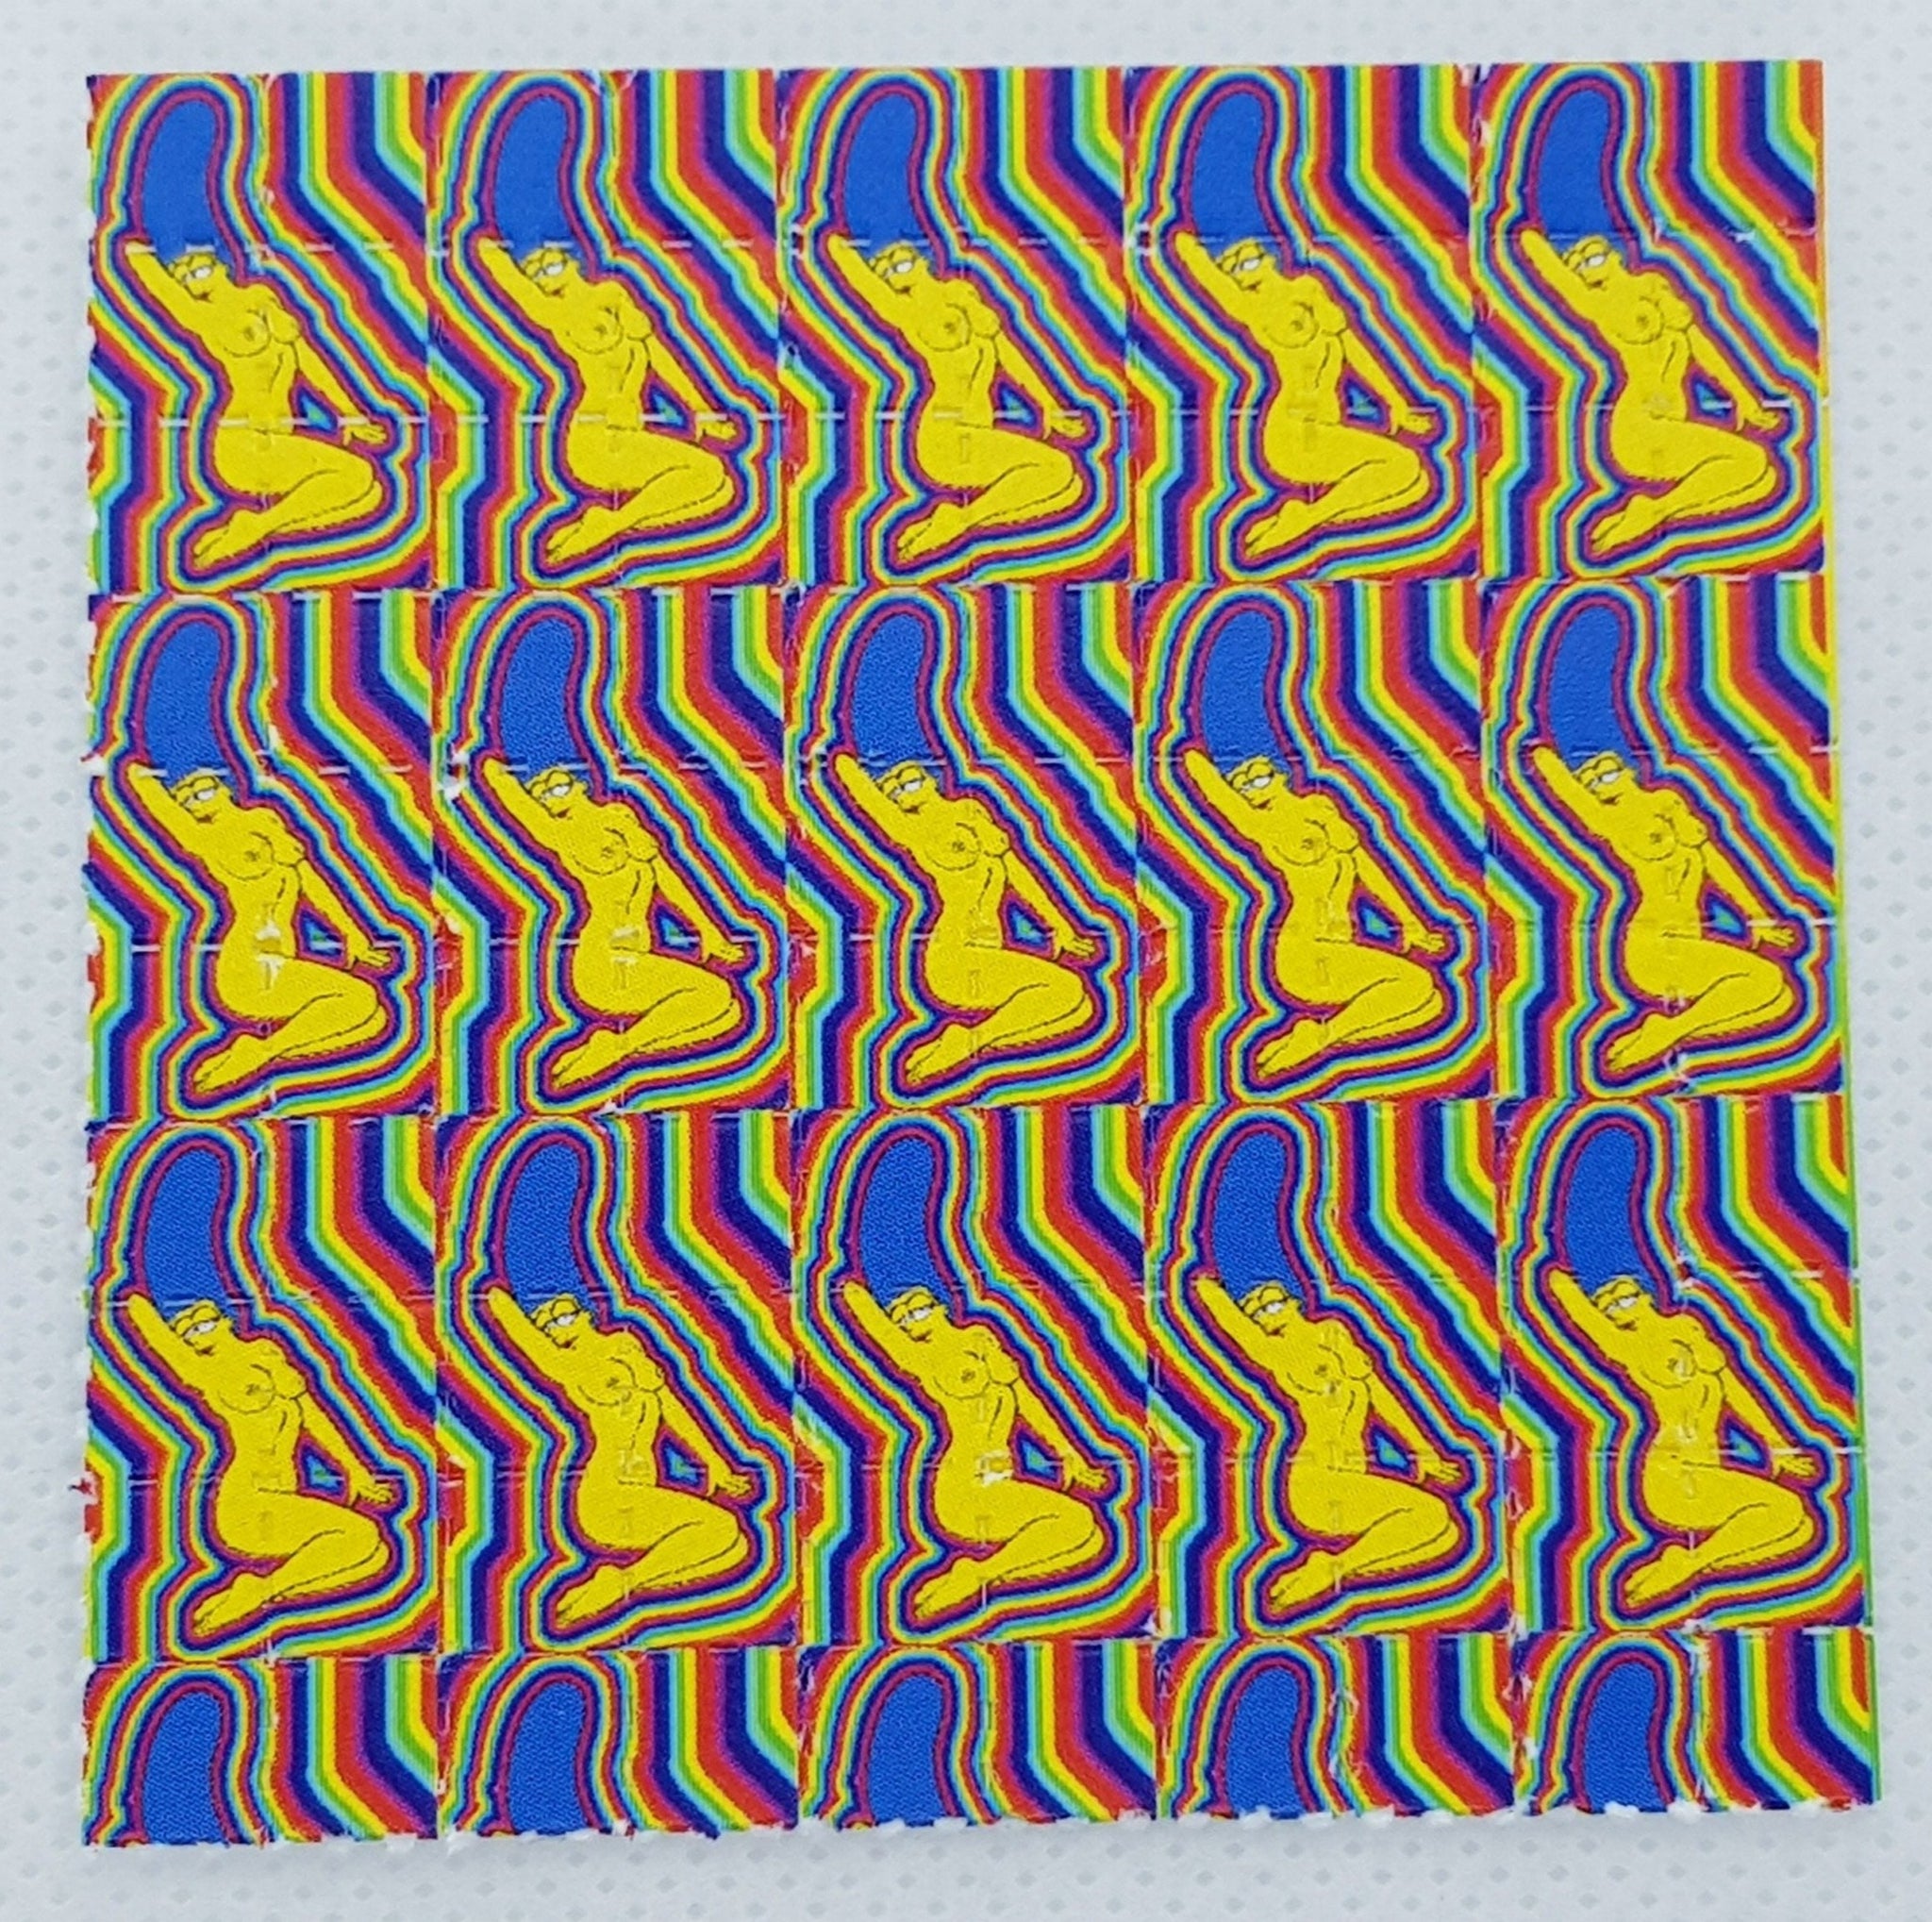 Marge Simpson LSD Blotter Art